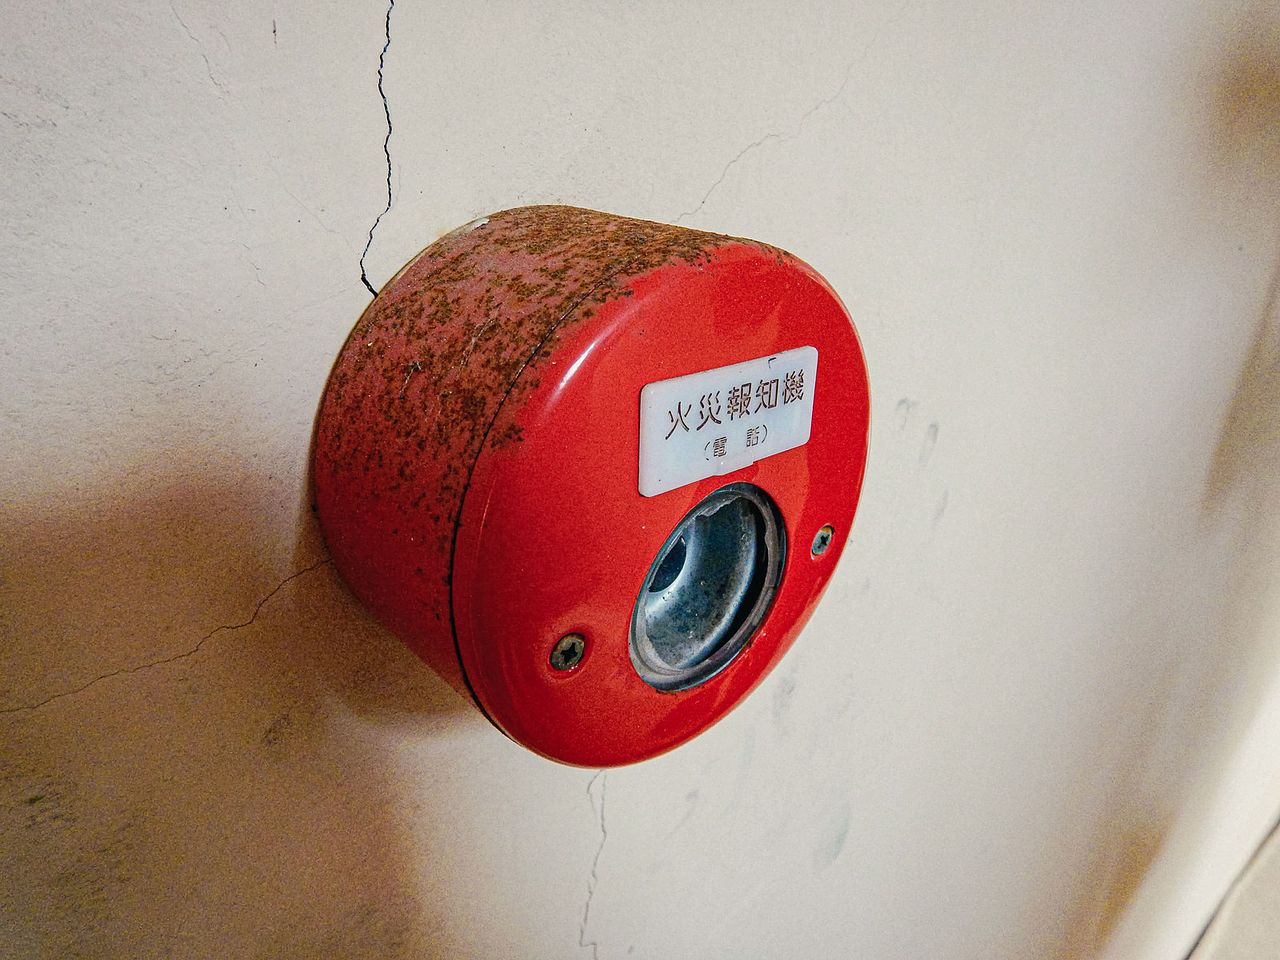 火災警報器の設置義務について